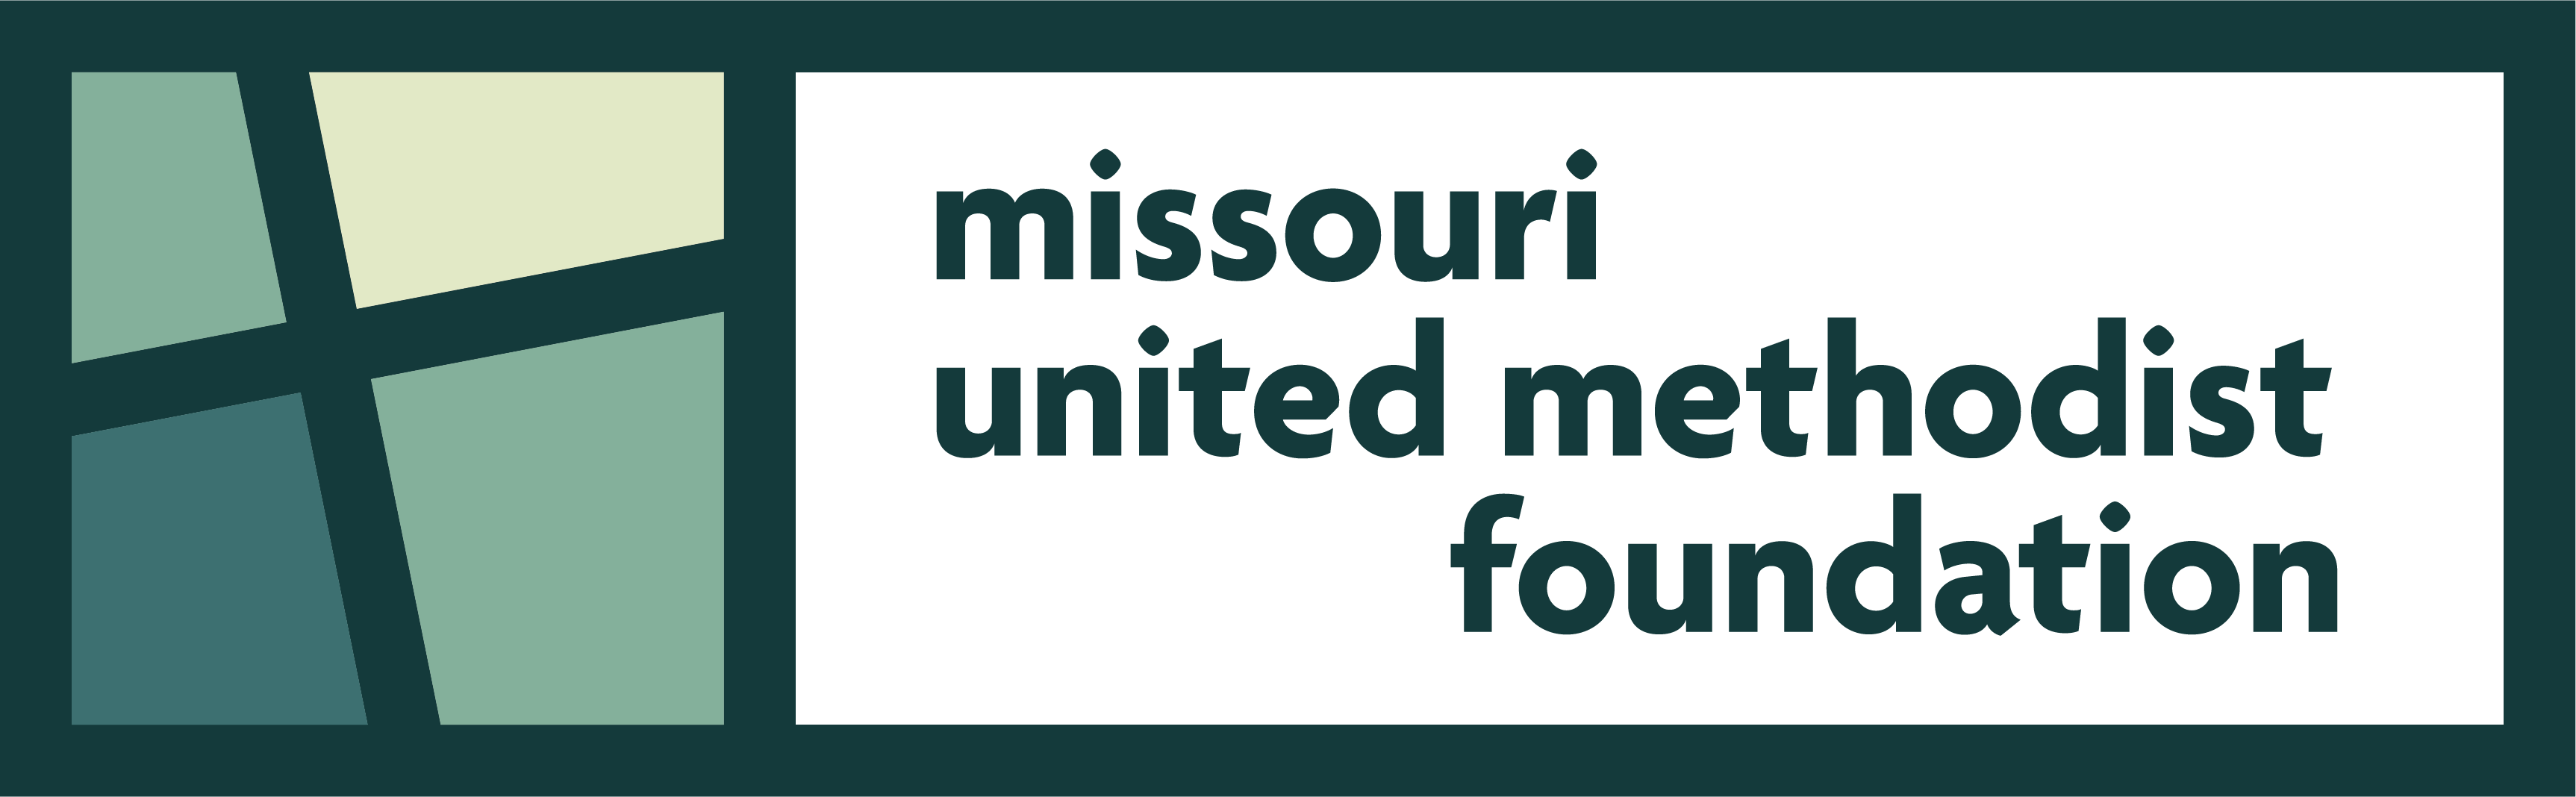 Missouri United Methodist Foundation